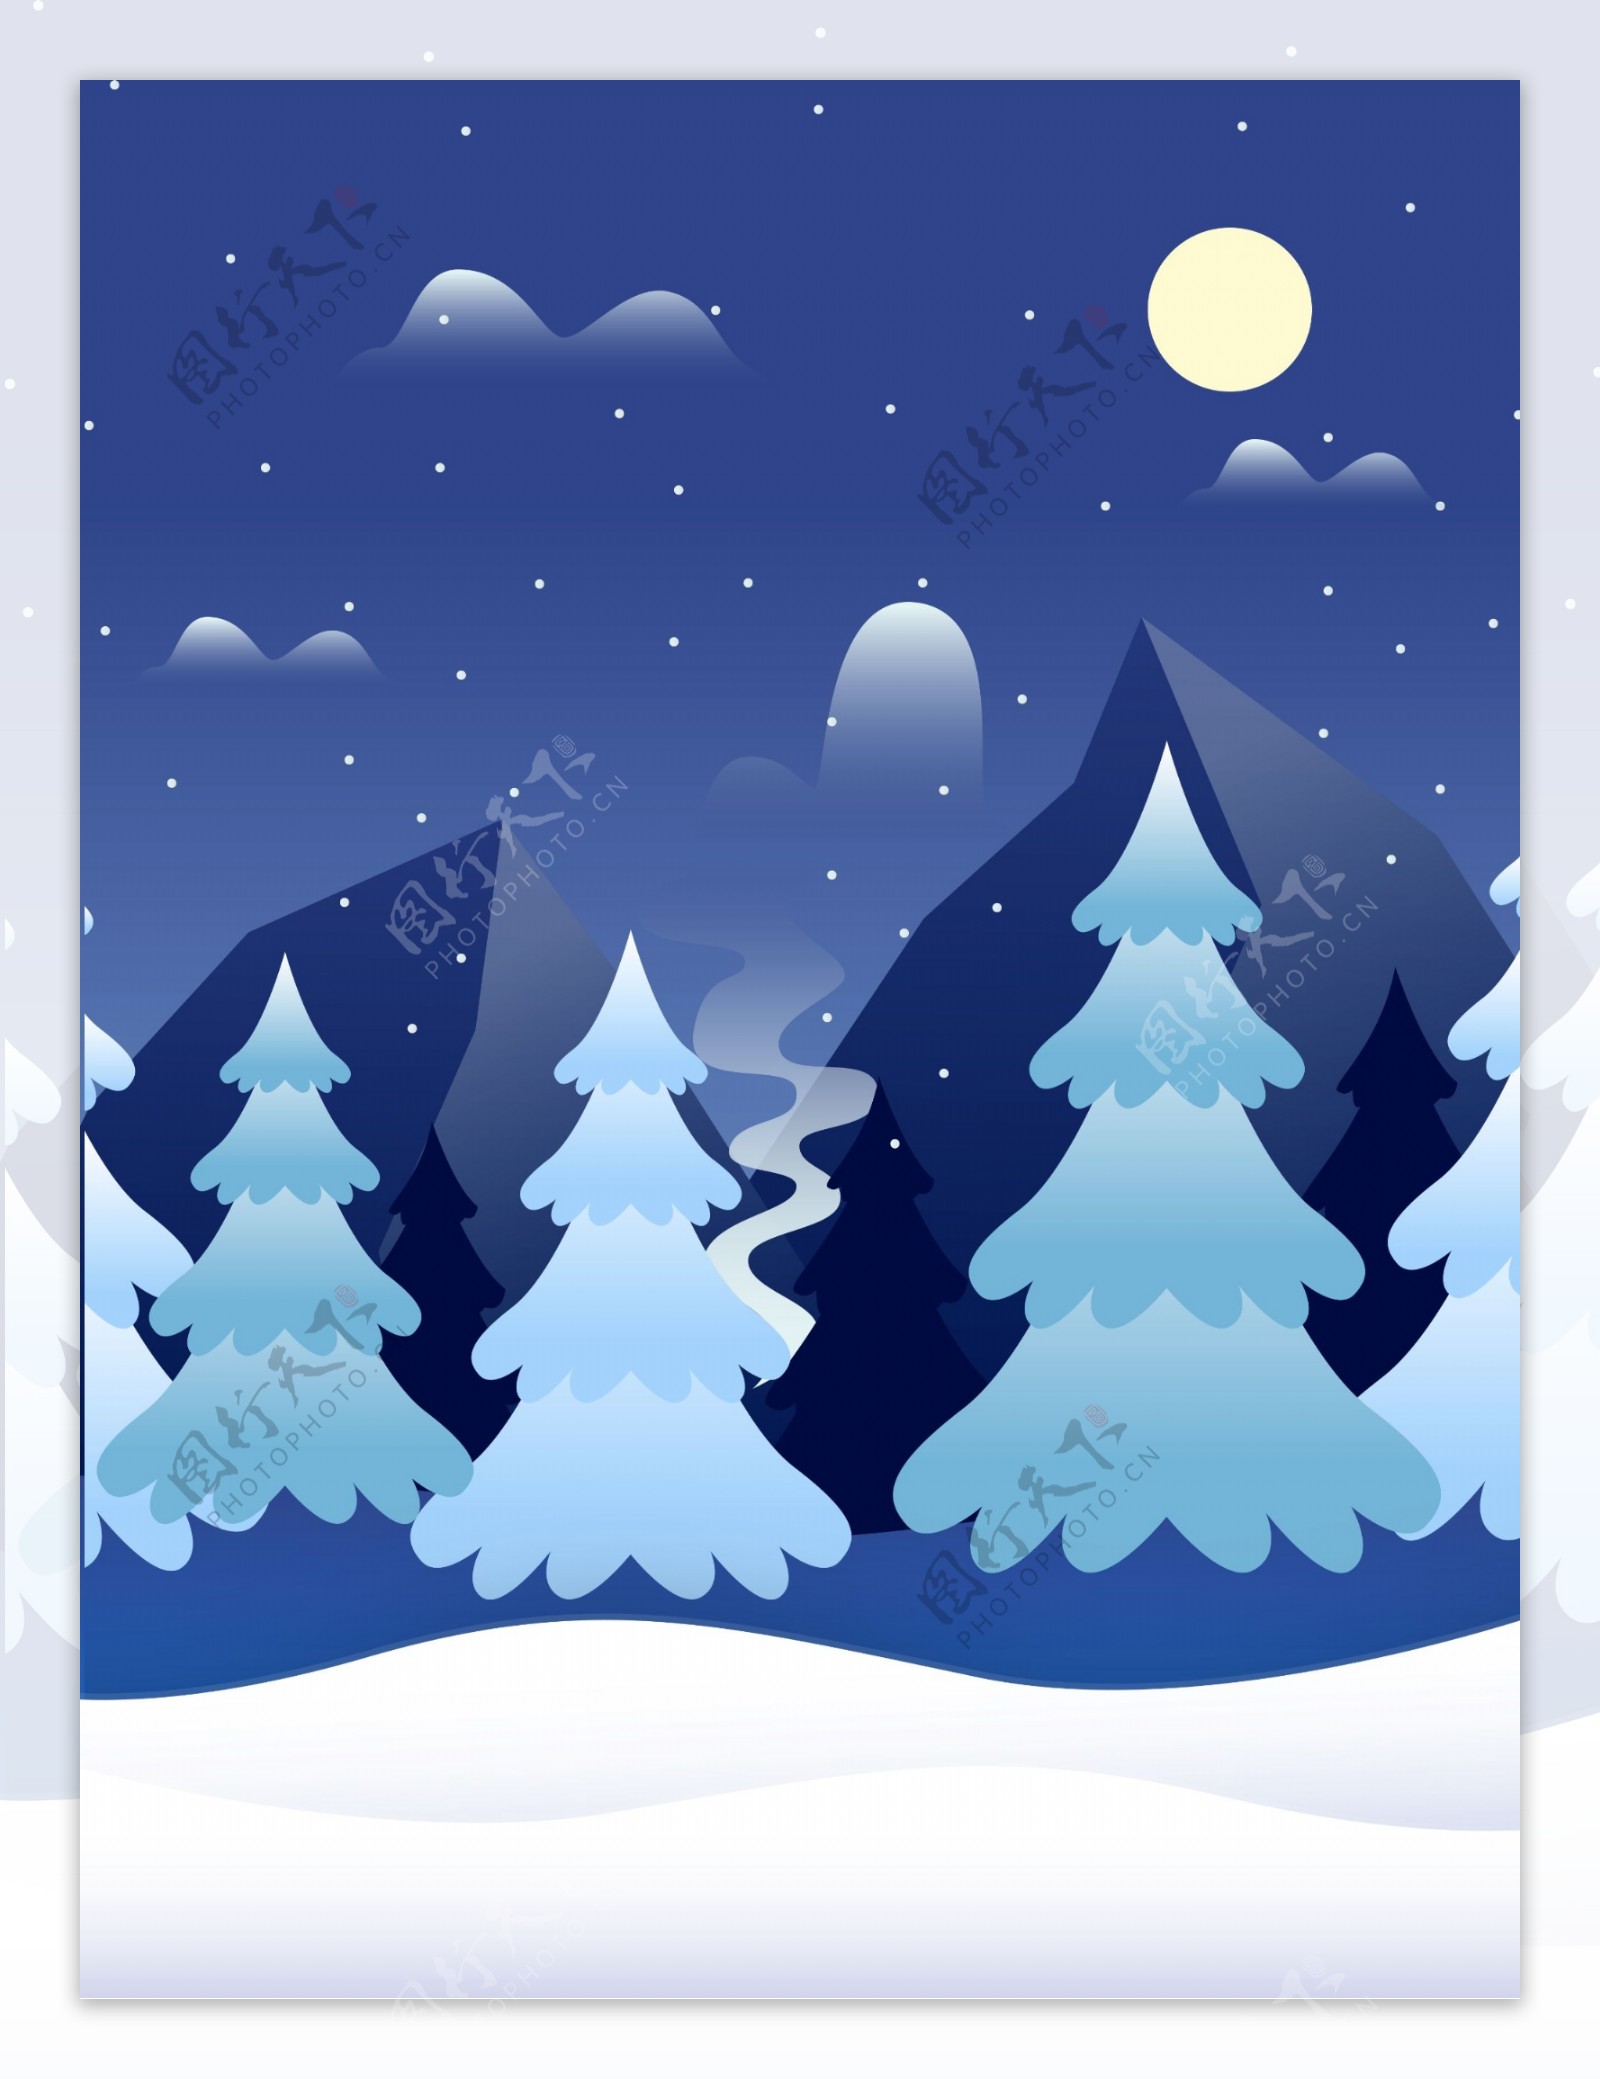 唯美星空雪景冬季背景素材